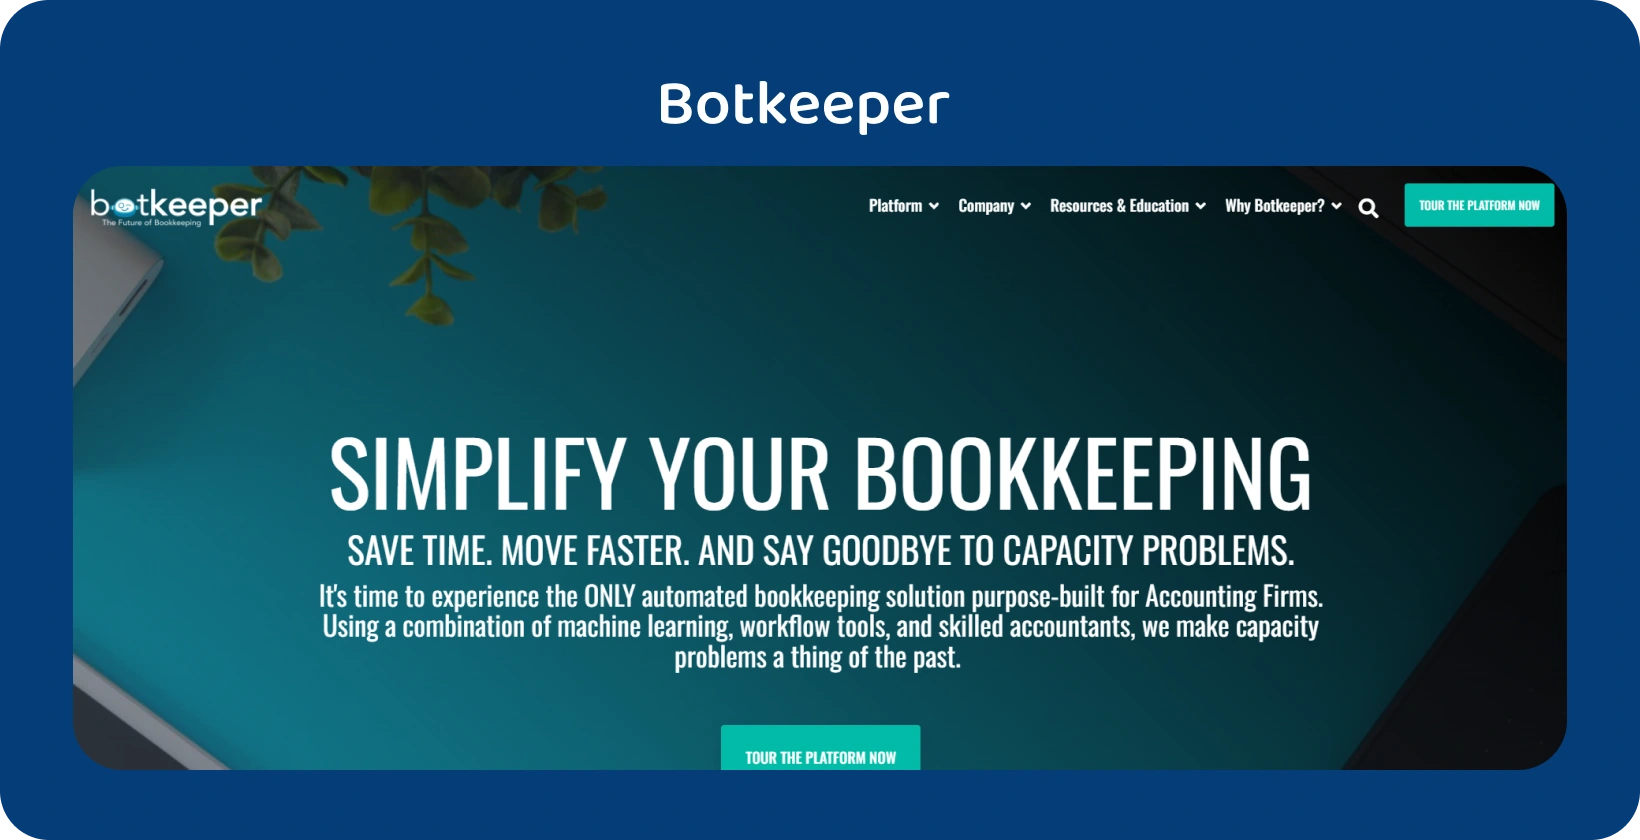 Beranda Botkeeper menyoroti penyederhanaan pembukuan untuk akuntan melalui teknologi otomasinya.